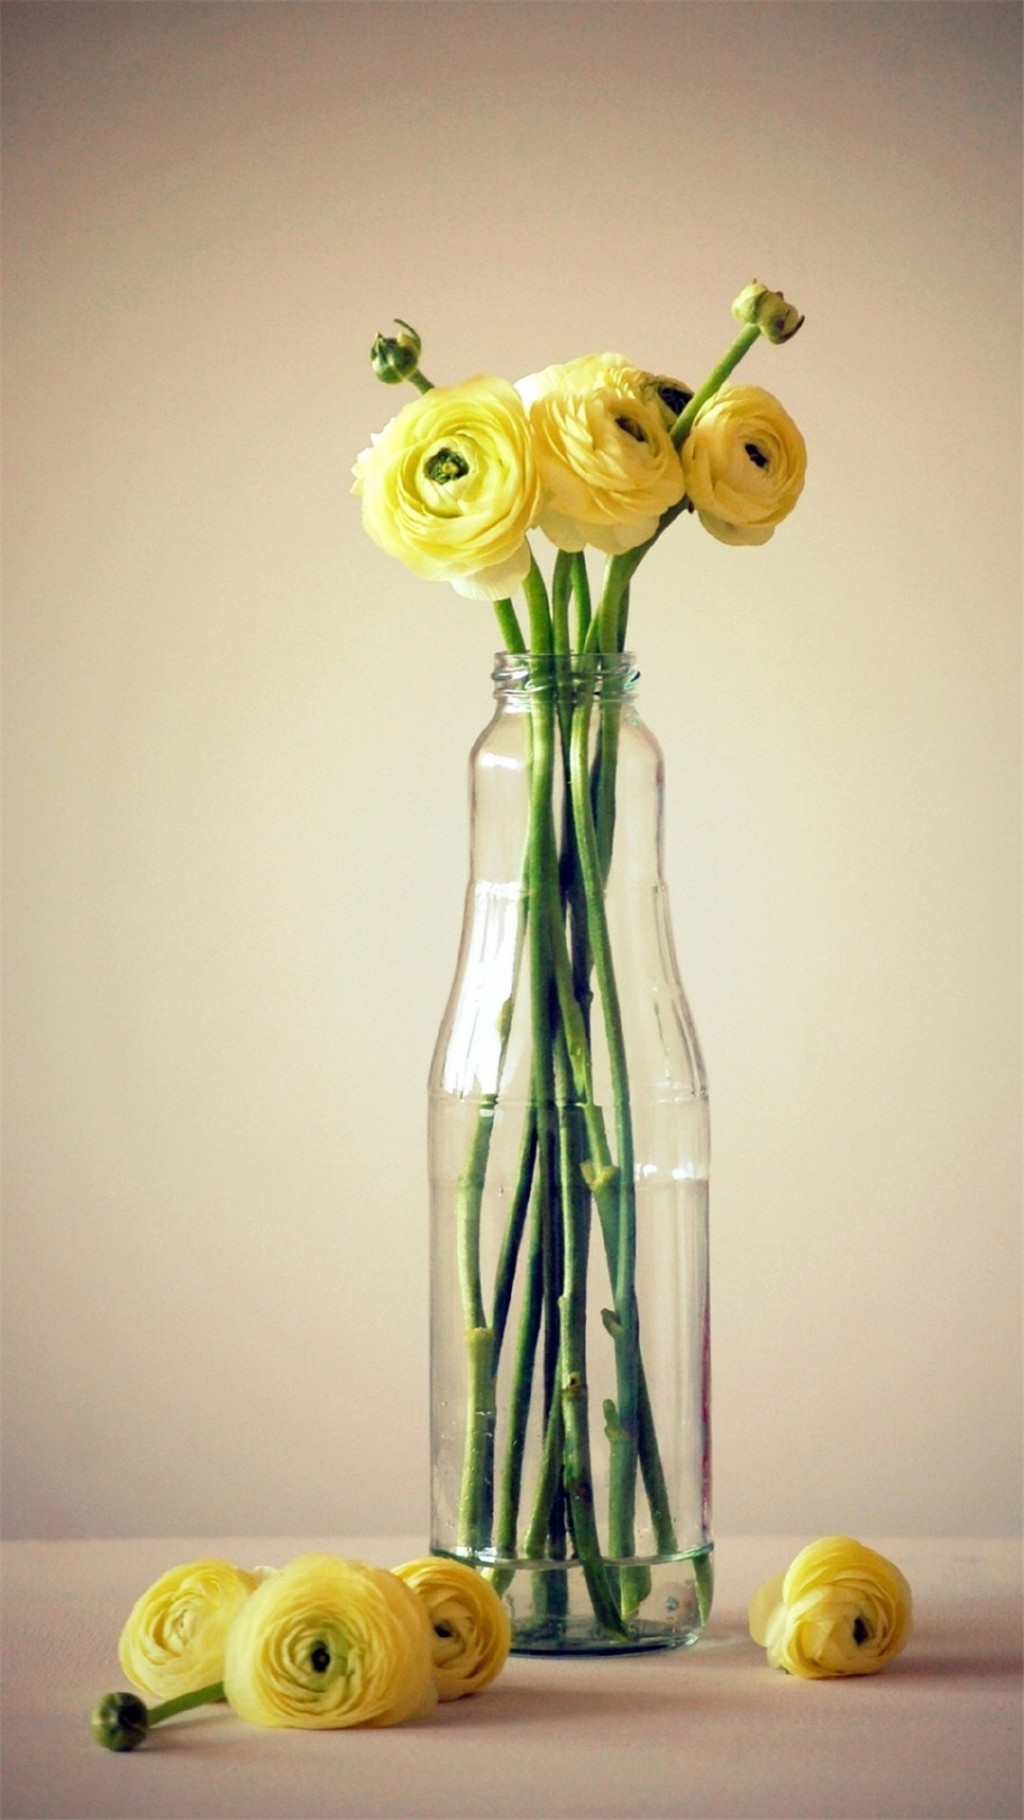 花瓶中的花卉静物摄影图片手机壁纸